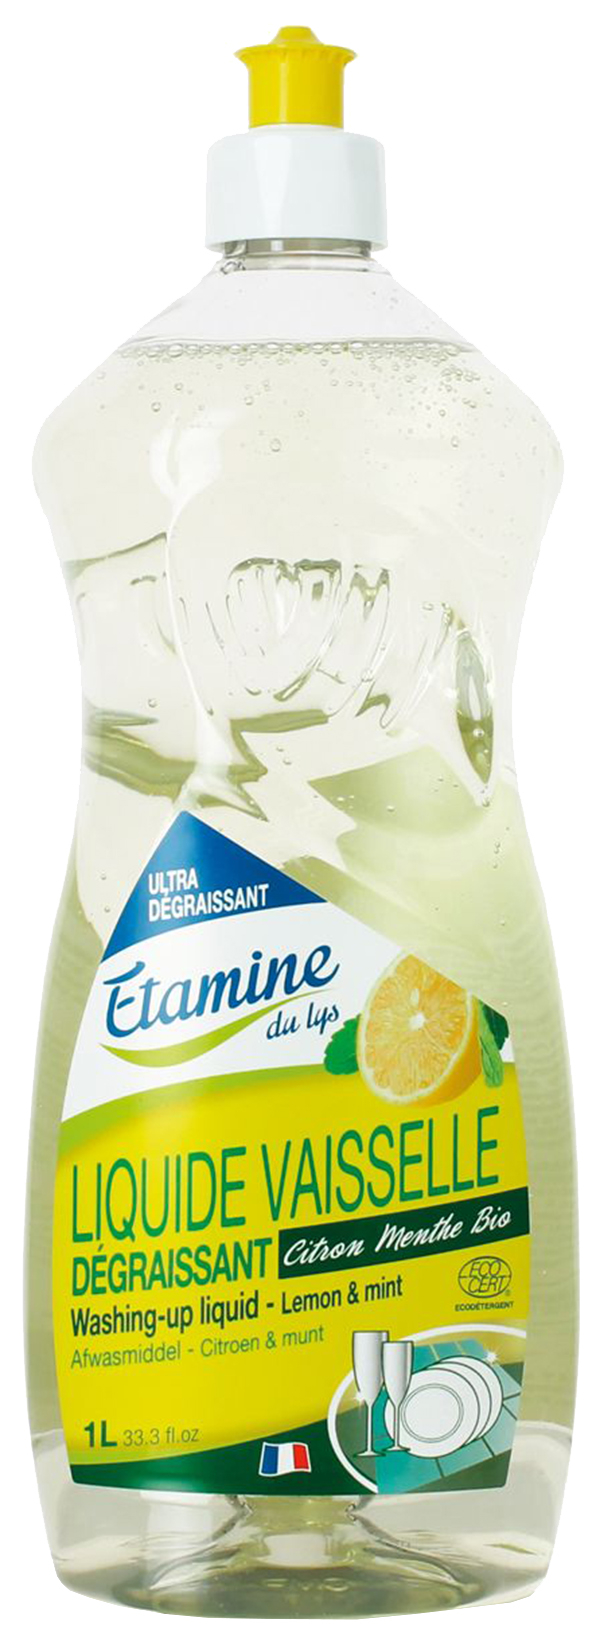 фото Средство для мытья детской посуды etamine du lys лимон и мята, 1 л